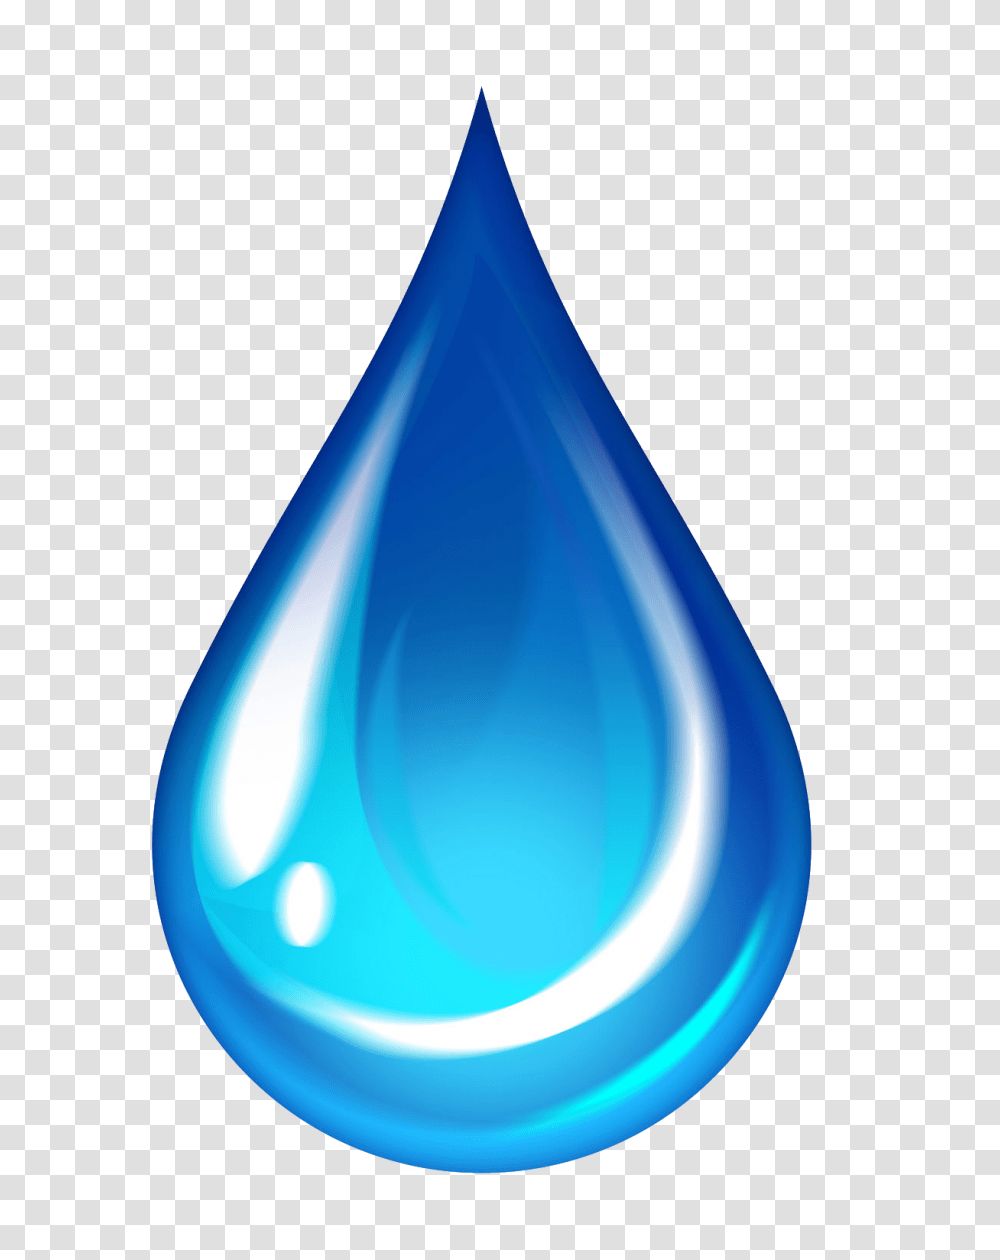 Water Droplet Emoji Goutte D Eau Iphone Transparent Png